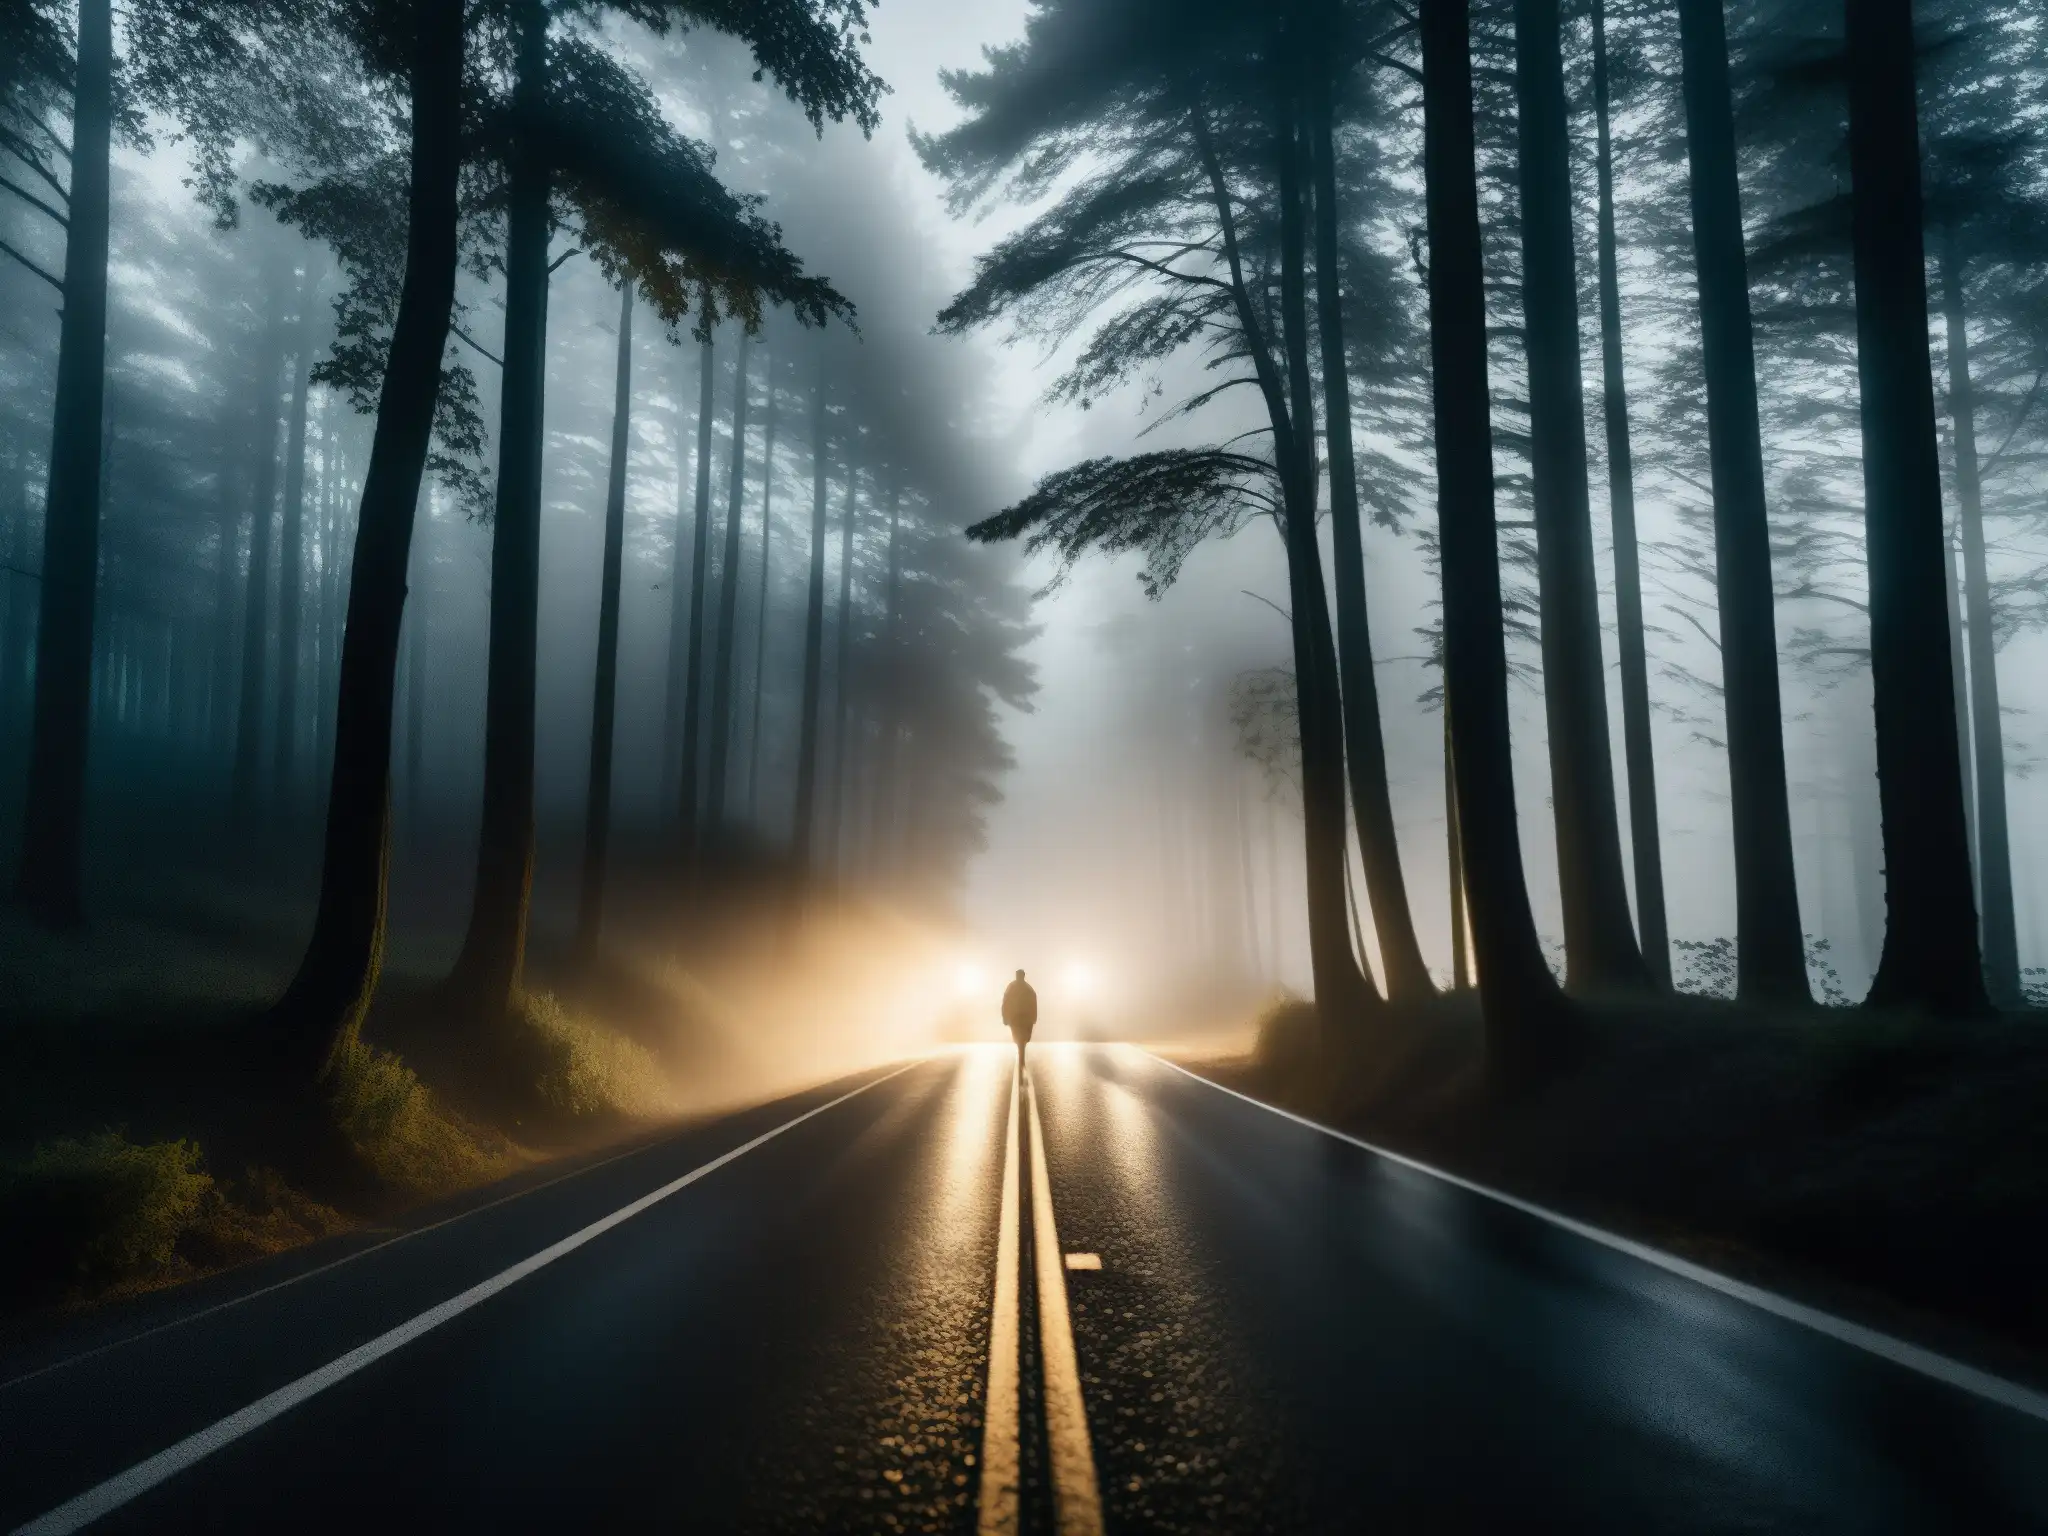 Un camino oscuro y misterioso iluminado por los faros de un coche, rodeado de densos árboles y una atmósfera brumosa